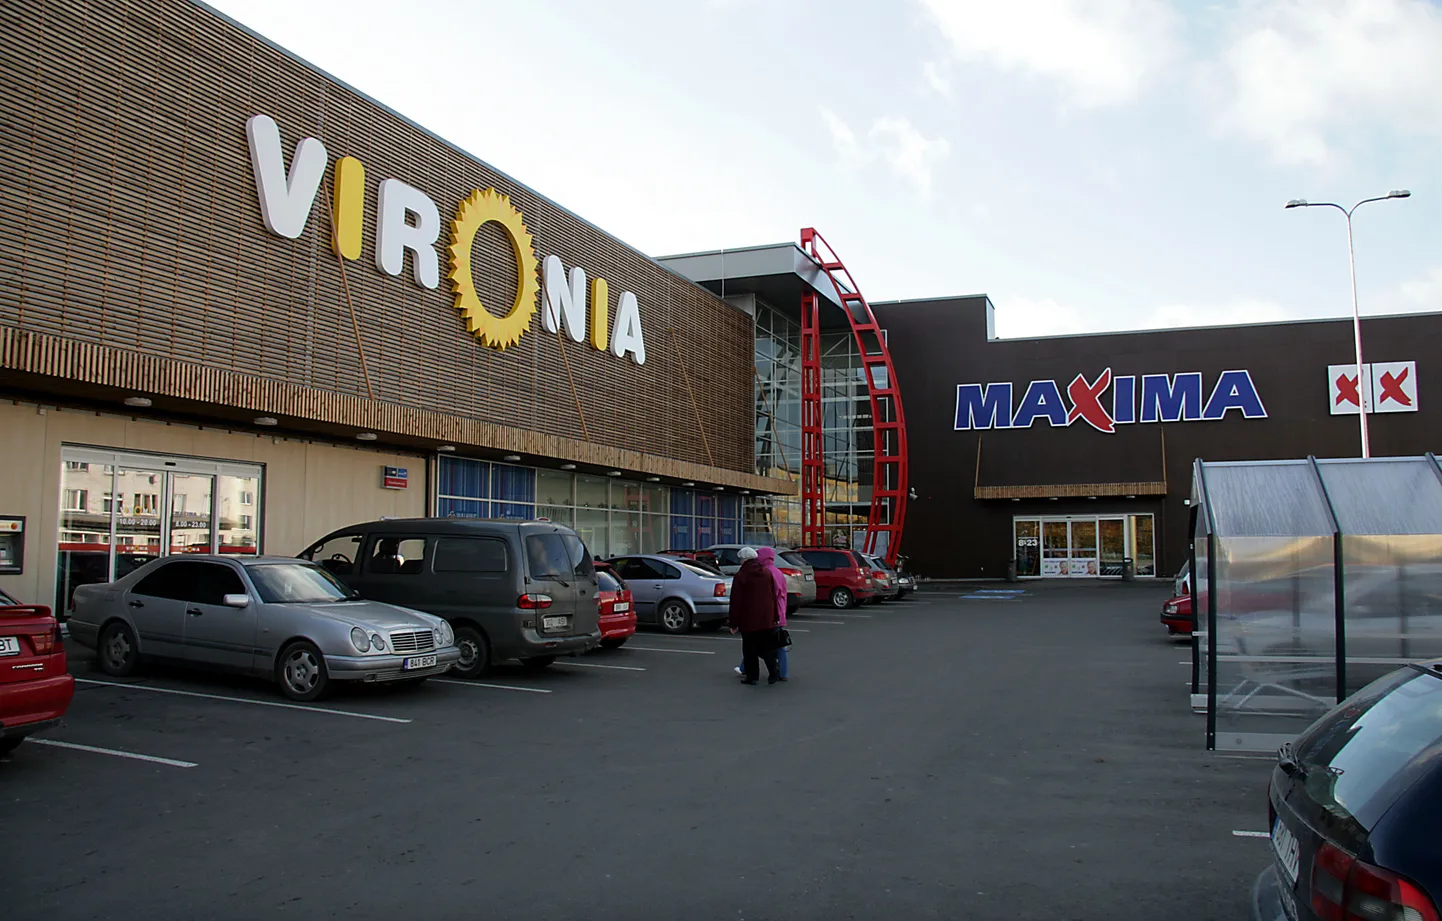 Торговый центр "Vironia" в Кохтла-Ярве.